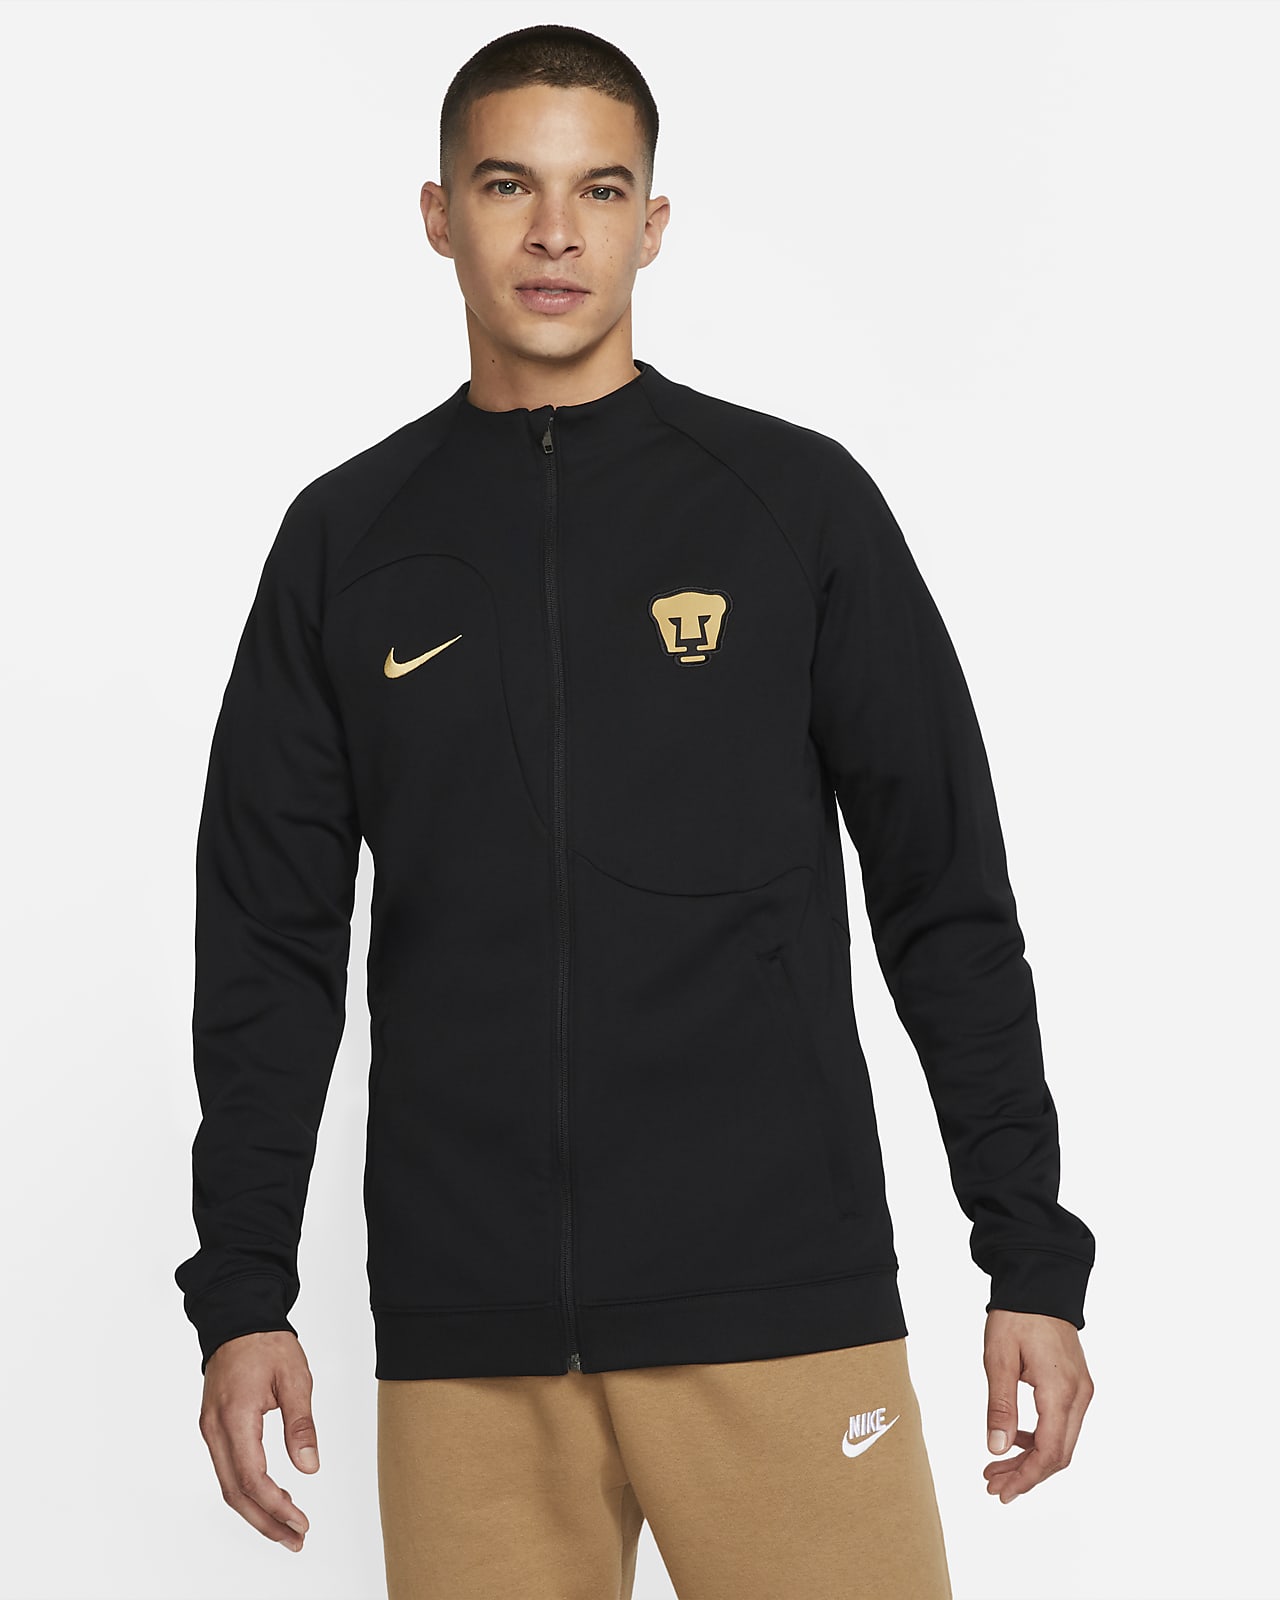 enkel en alleen Spreekwoord houder Pumas Academy Pro Anthem Men's Nike Dri-FIT Soccer Full-Zip Jacket. Nike.com